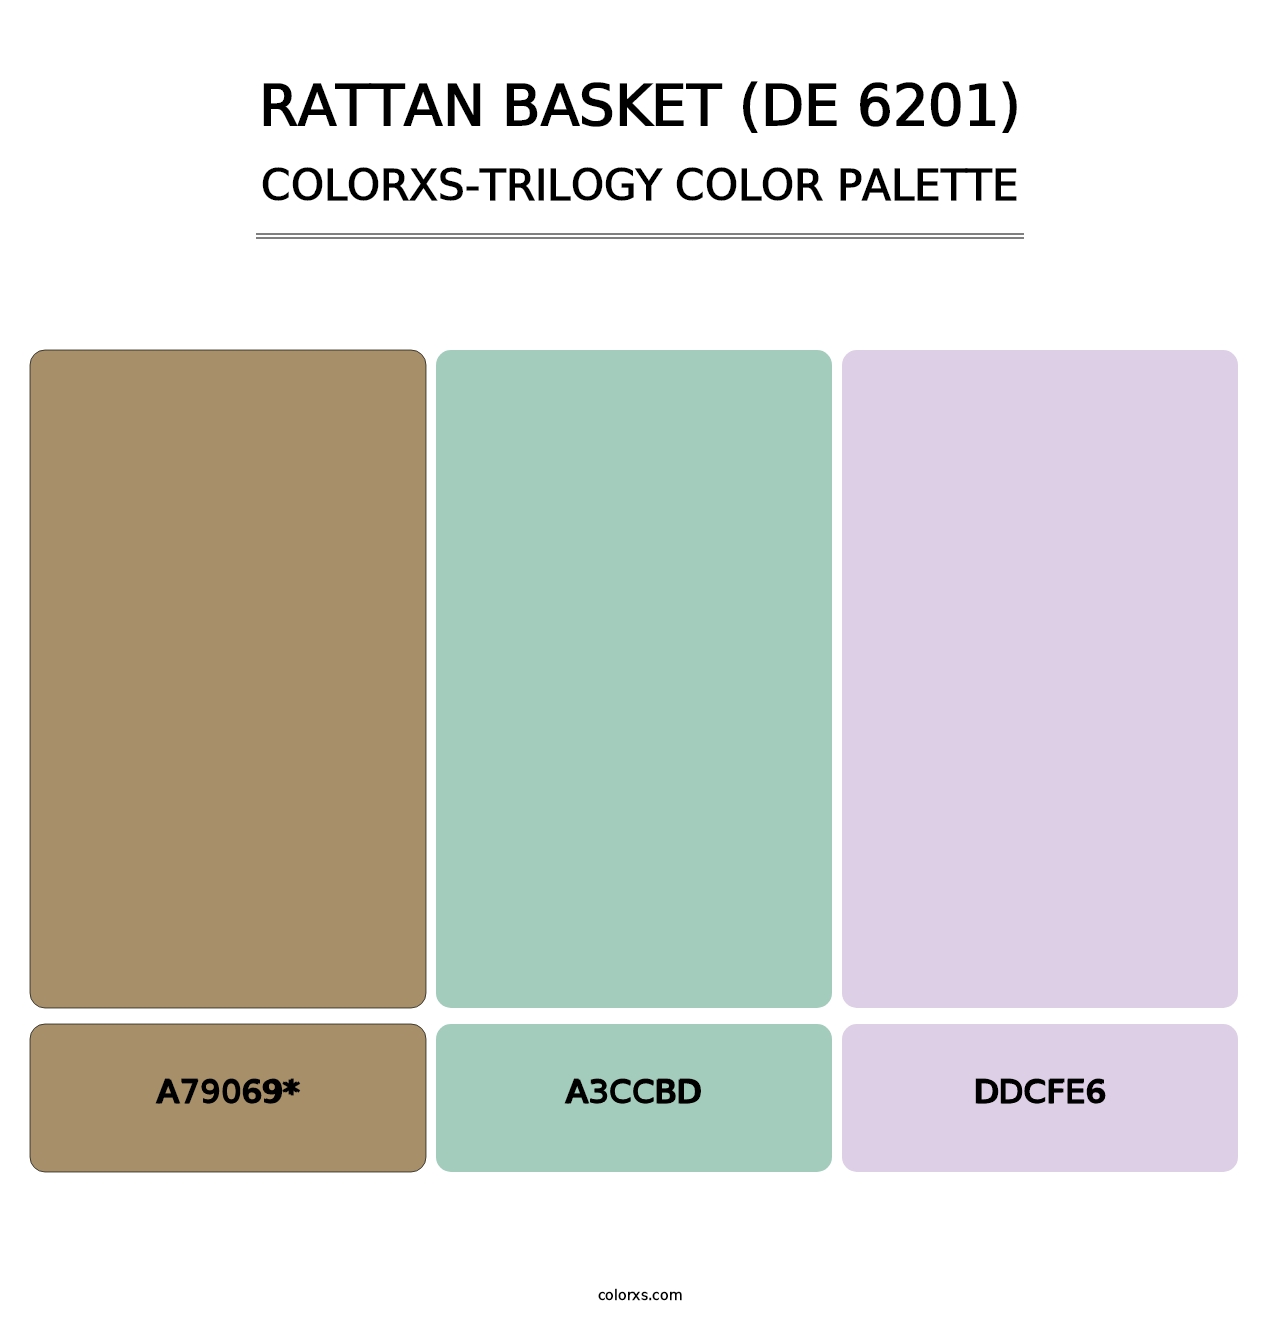 Rattan Basket (DE 6201) - Colorxs Trilogy Palette